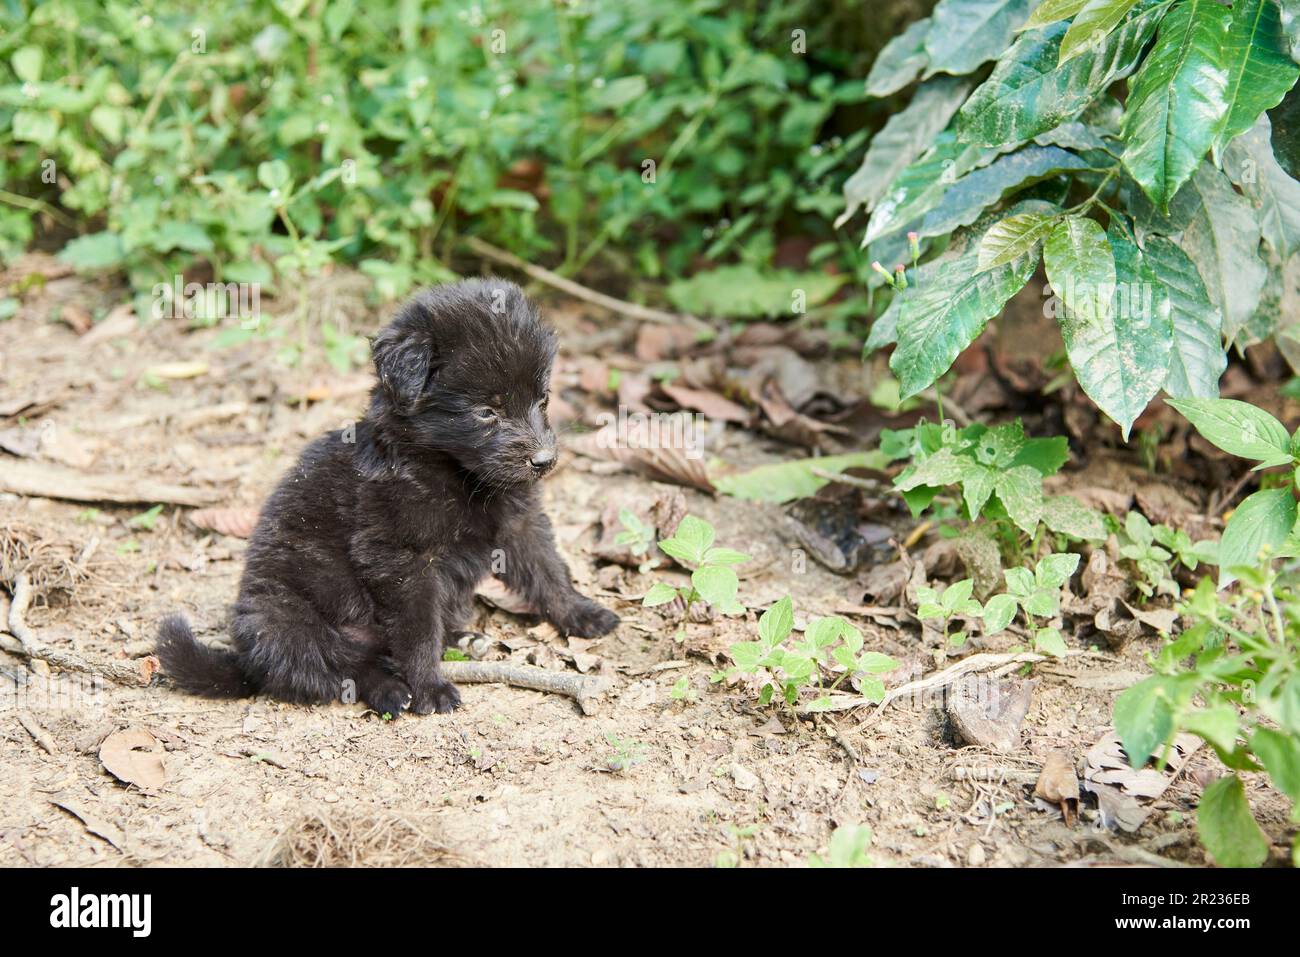 Adorabile cucciolo nero seduto in un ambiente naturale all'aperto. Composizione senza persone con spazio di copia. Foto Stock